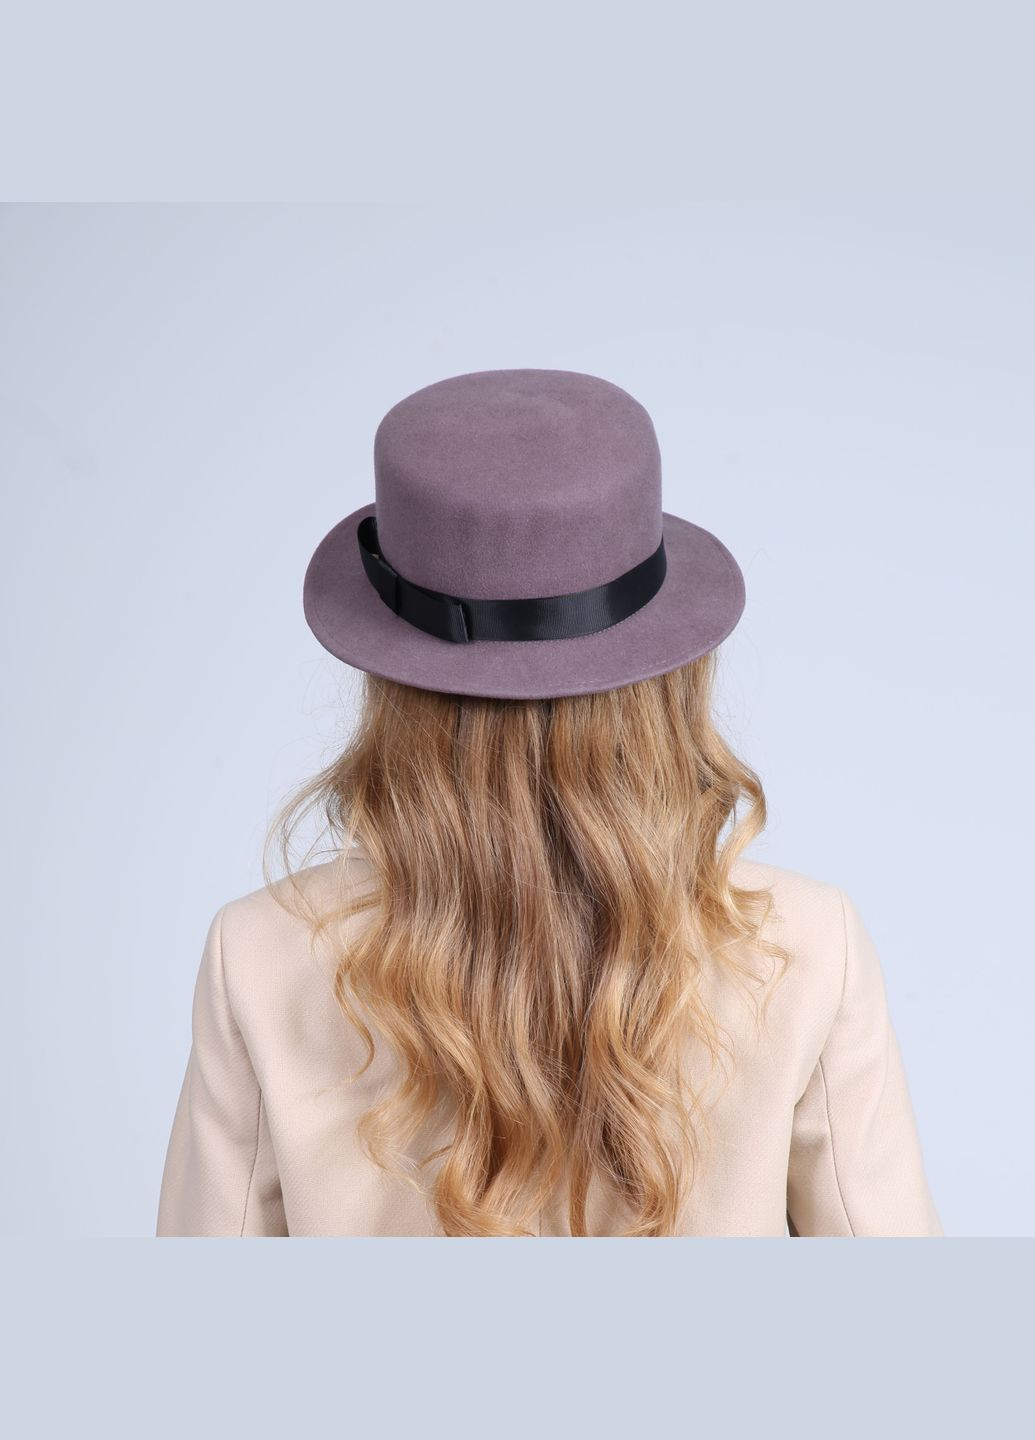 Шляпа канотье женская с лентой фетр розовая LuckyLOOK 928-680 (289478349)